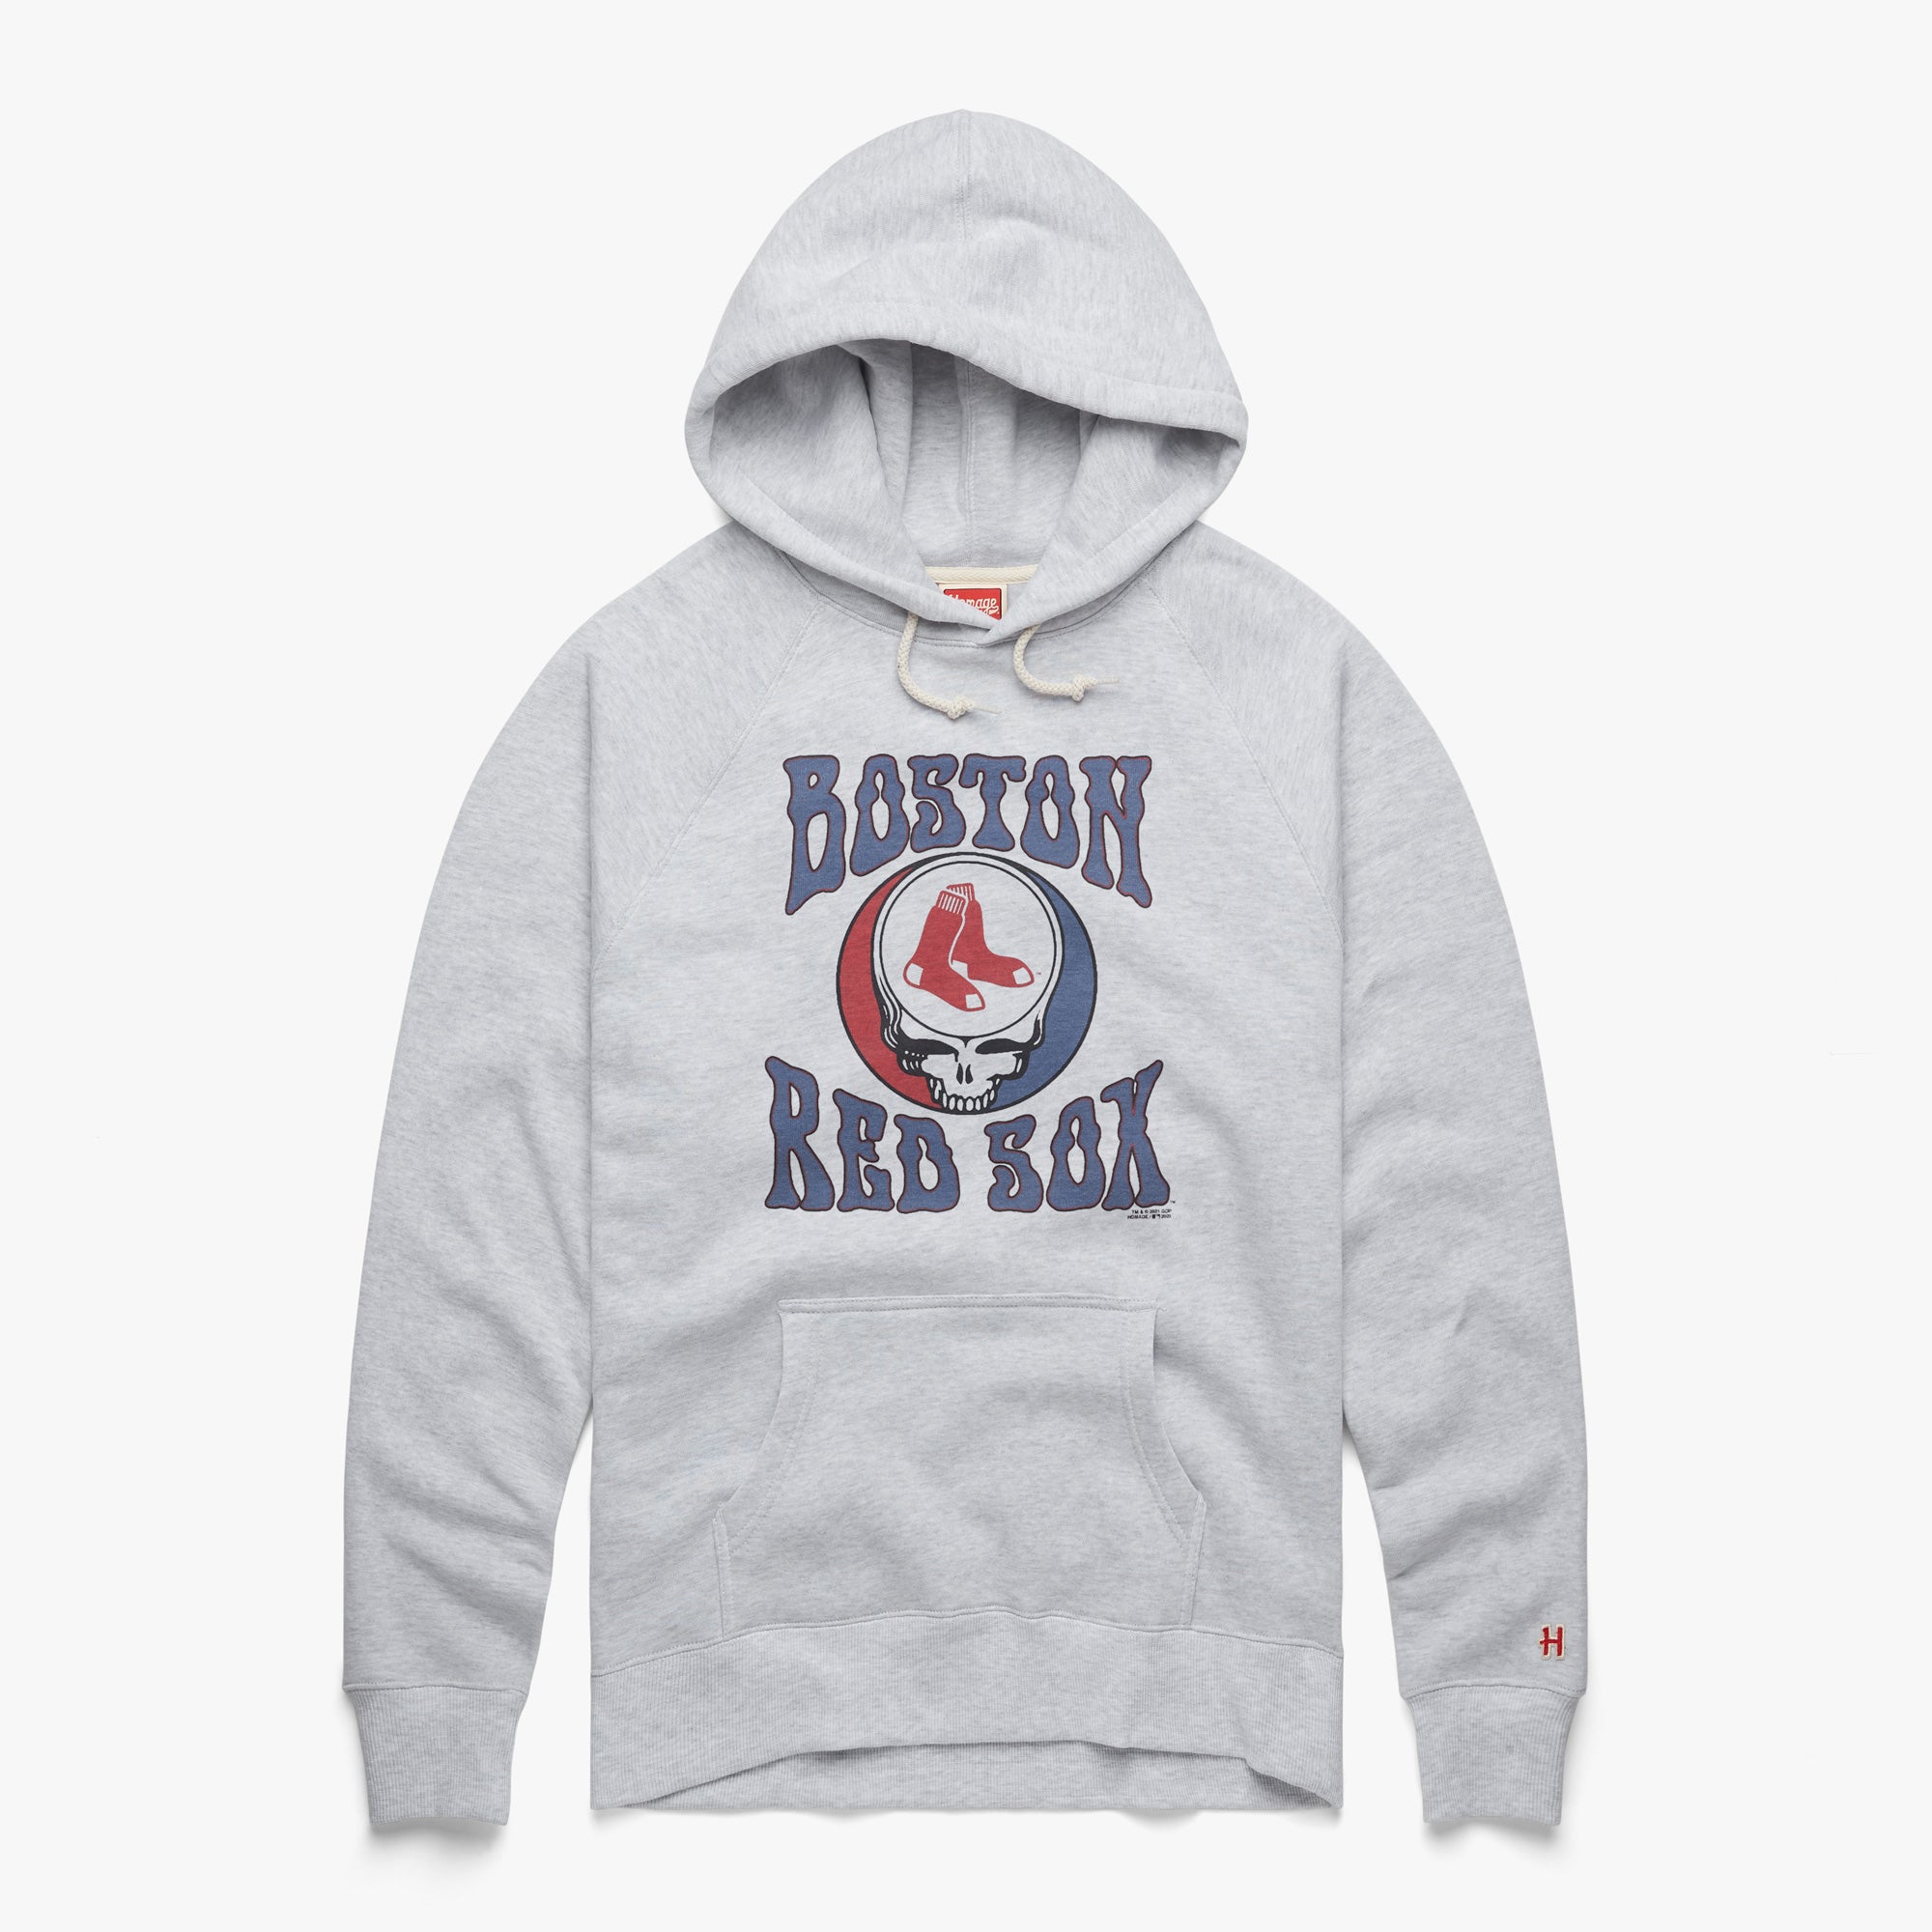 Vintage Mlb Boston Red Sox T-Shirt Shirt Sweatshirt Classic Hoodie